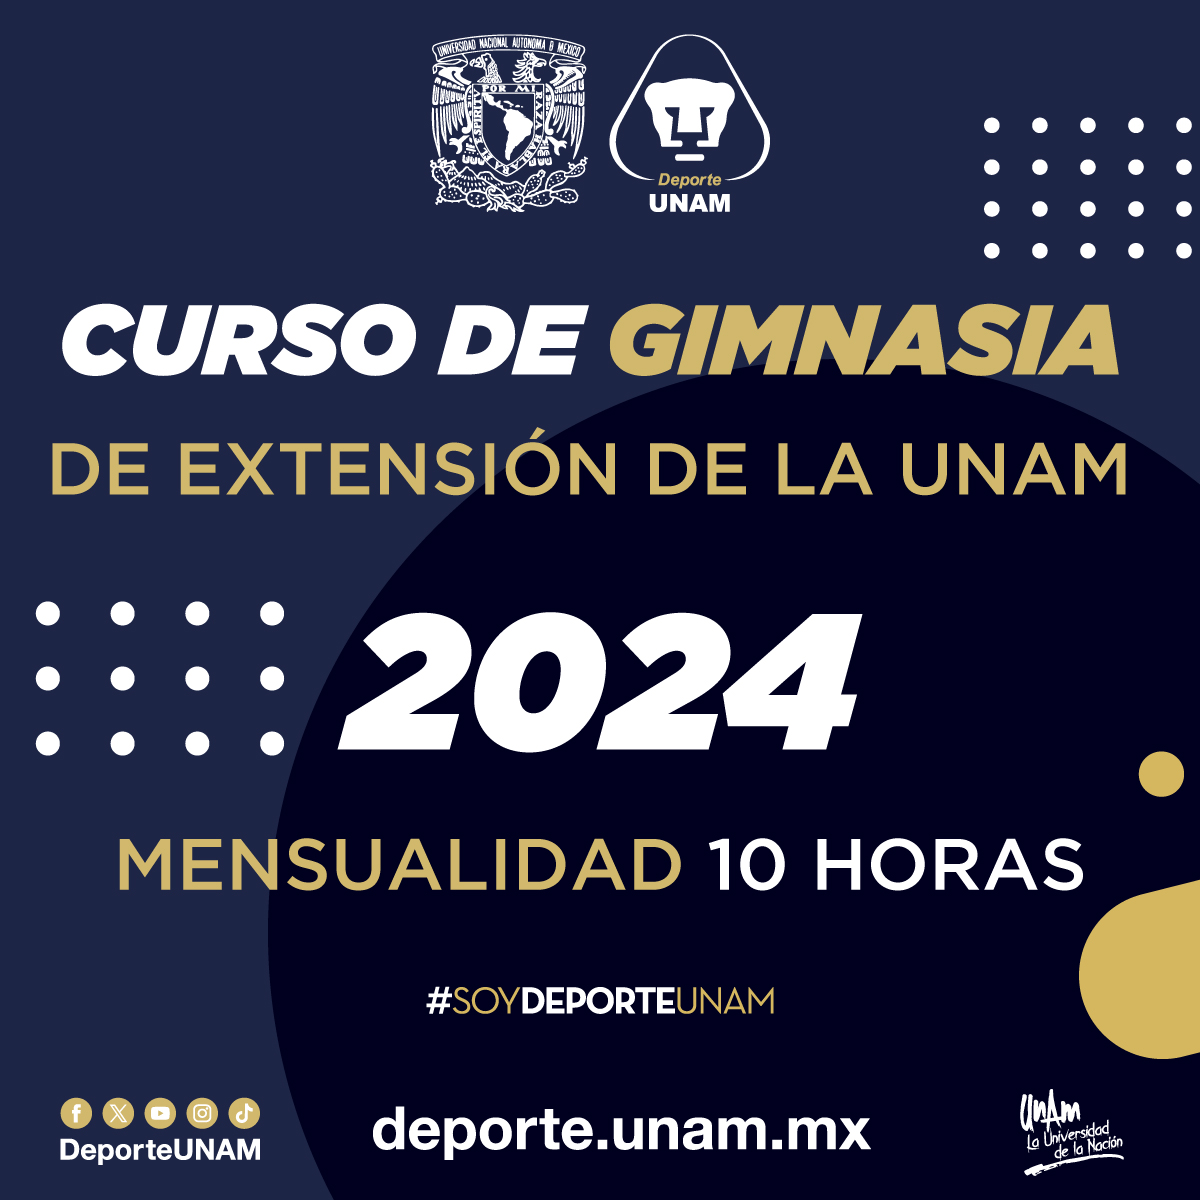 CURSO DE GIMNASIA DE EXTENSIÓN DE LA UNAM 2024 MENSUALIDAD 10 HORAS